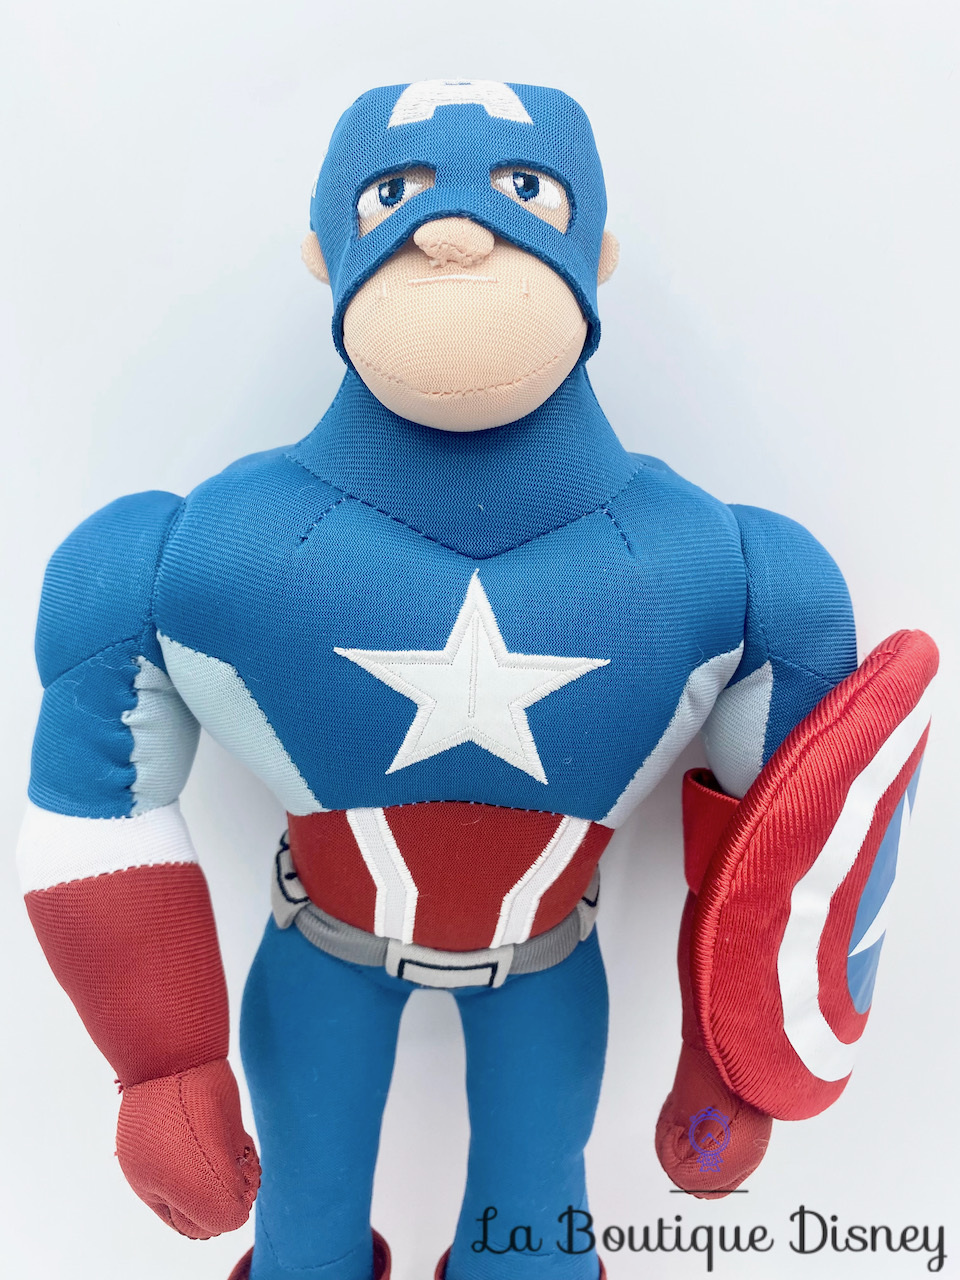 peluche-captain-america-disneyland-paris-disney-super-héros-marvel-poupée-chiffon-3